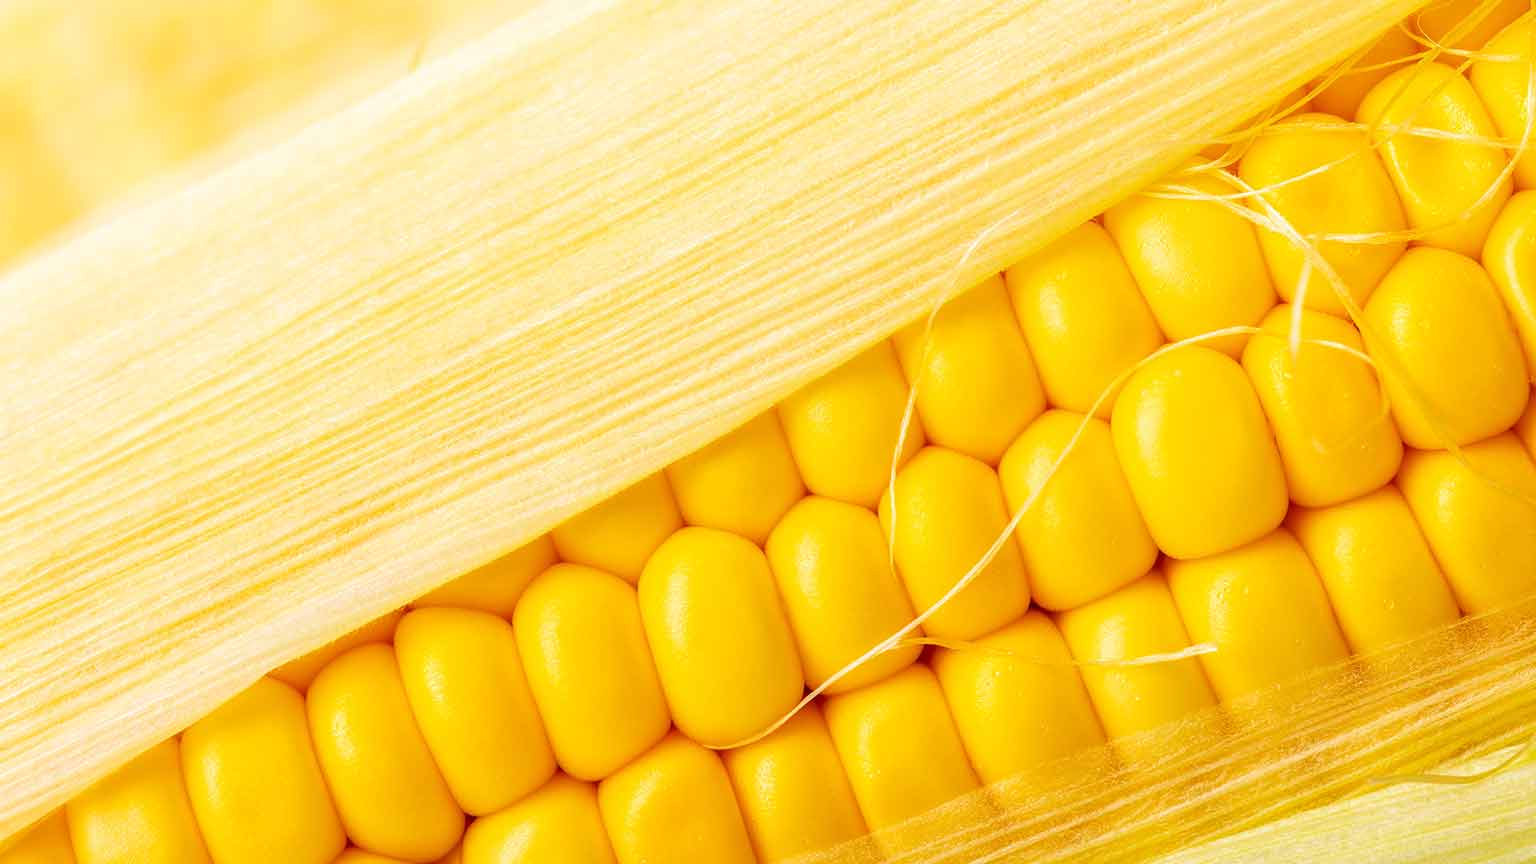 Ear of corn 